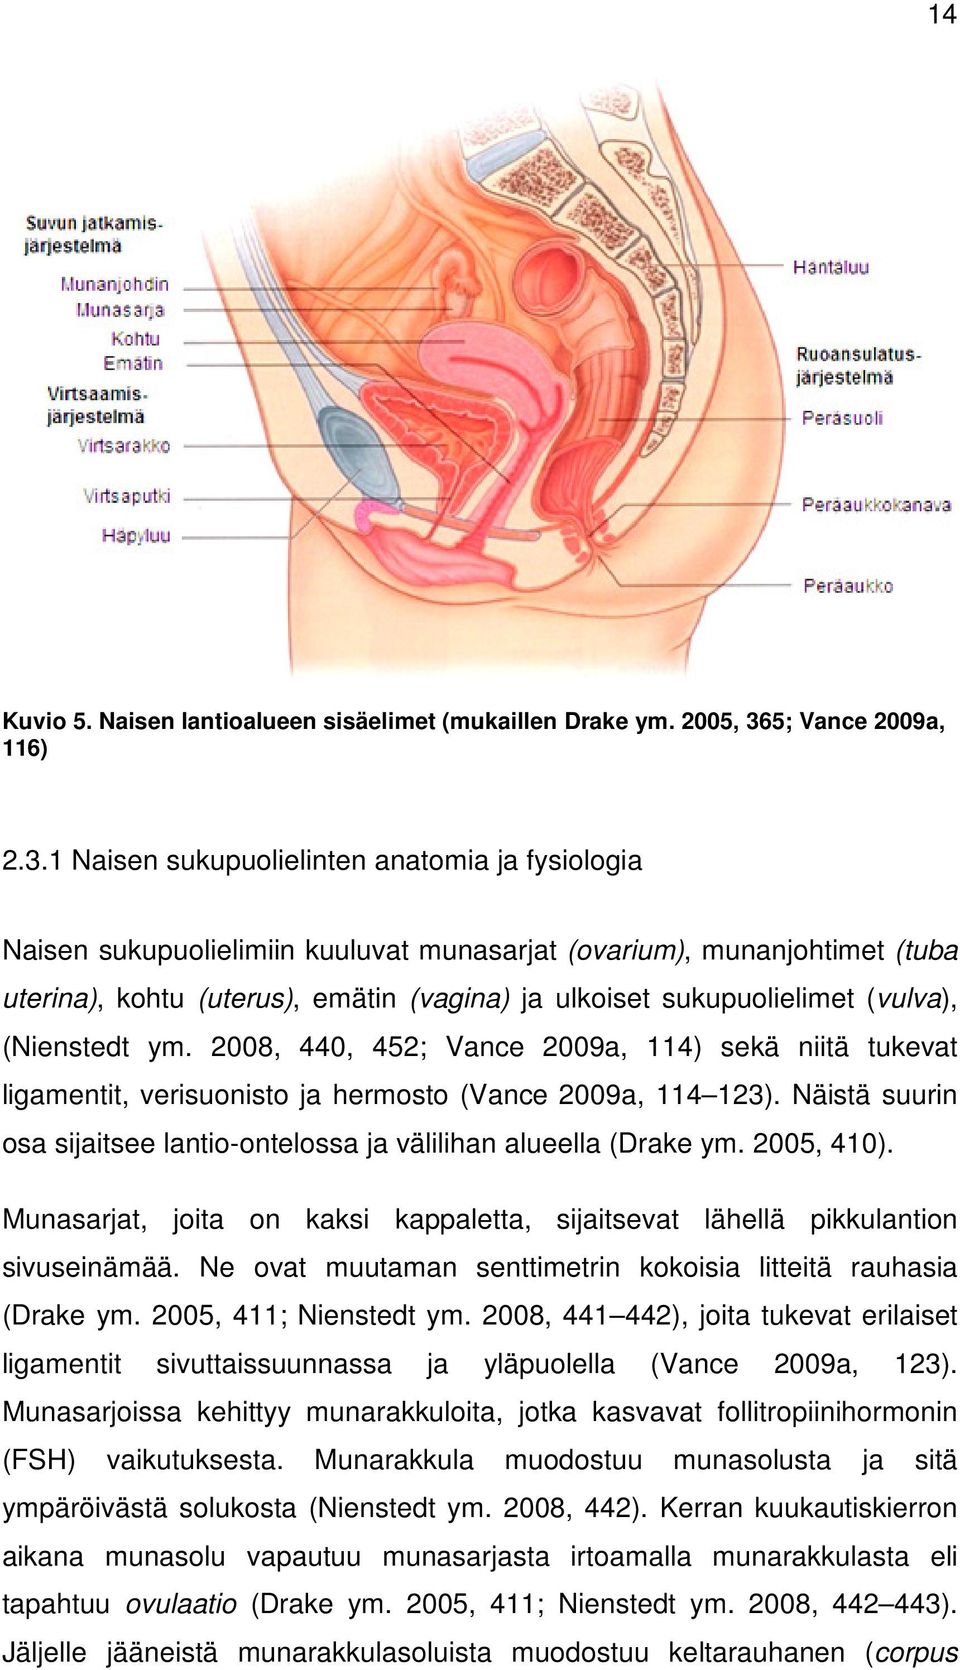 1 Naisen sukupuolielinten anatomia ja fysiologia Naisen sukupuolielimiin kuuluvat munasarjat (ovarium), munanjohtimet (tuba uterina), kohtu (uterus), emätin (vagina) ja ulkoiset sukupuolielimet